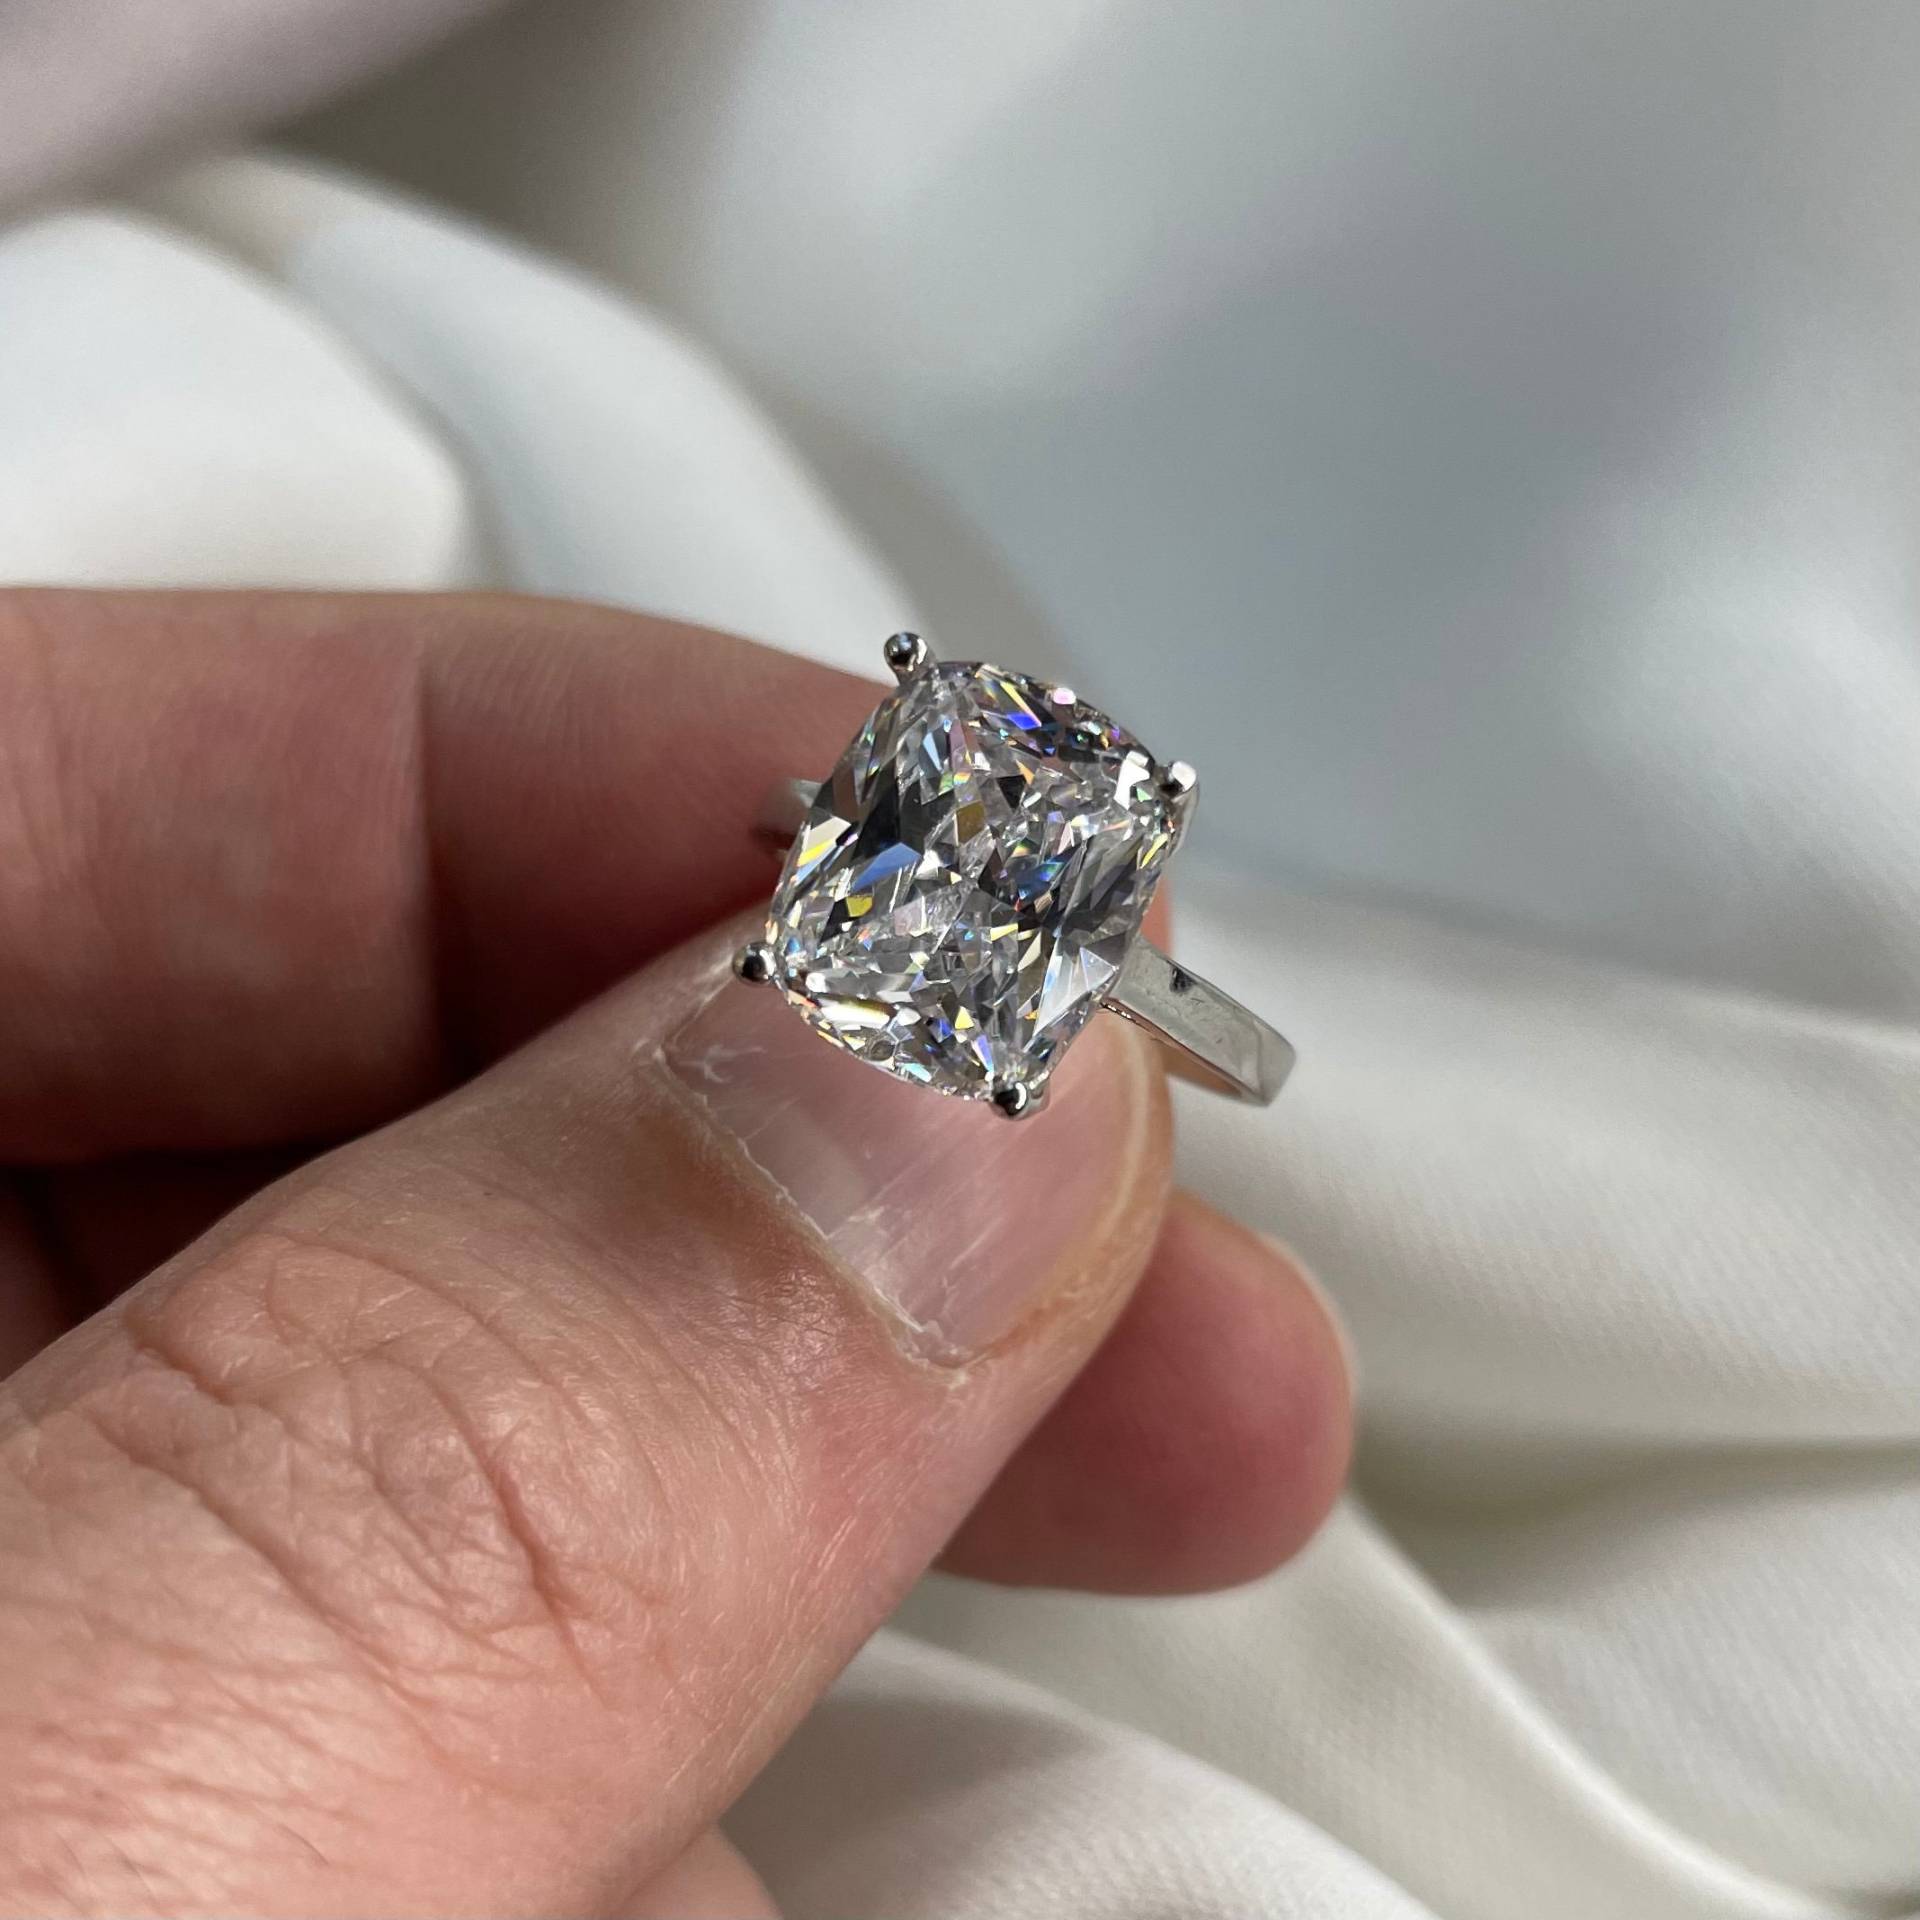 Massiv 925 Sterling Silber 6 Karat Kissen Erstellt Diamant Hochzeit Jahrestag Solitär Ring Luxus Hochzeitsgeschenk von LimaniLondon